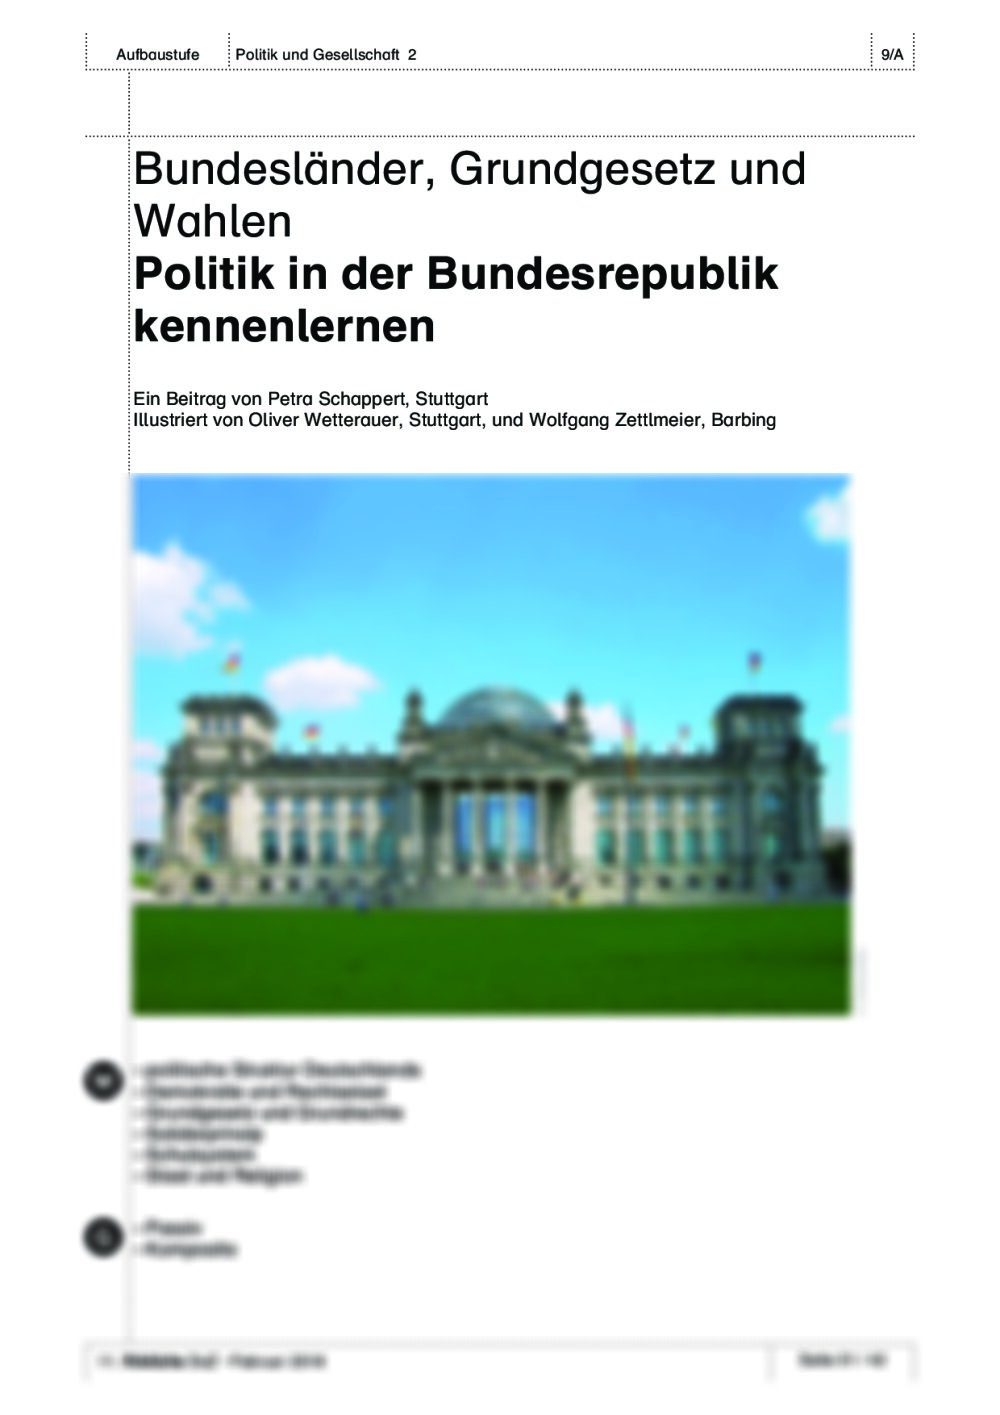 Politik in der Bundesrepublik kennenlernen - Seite 1